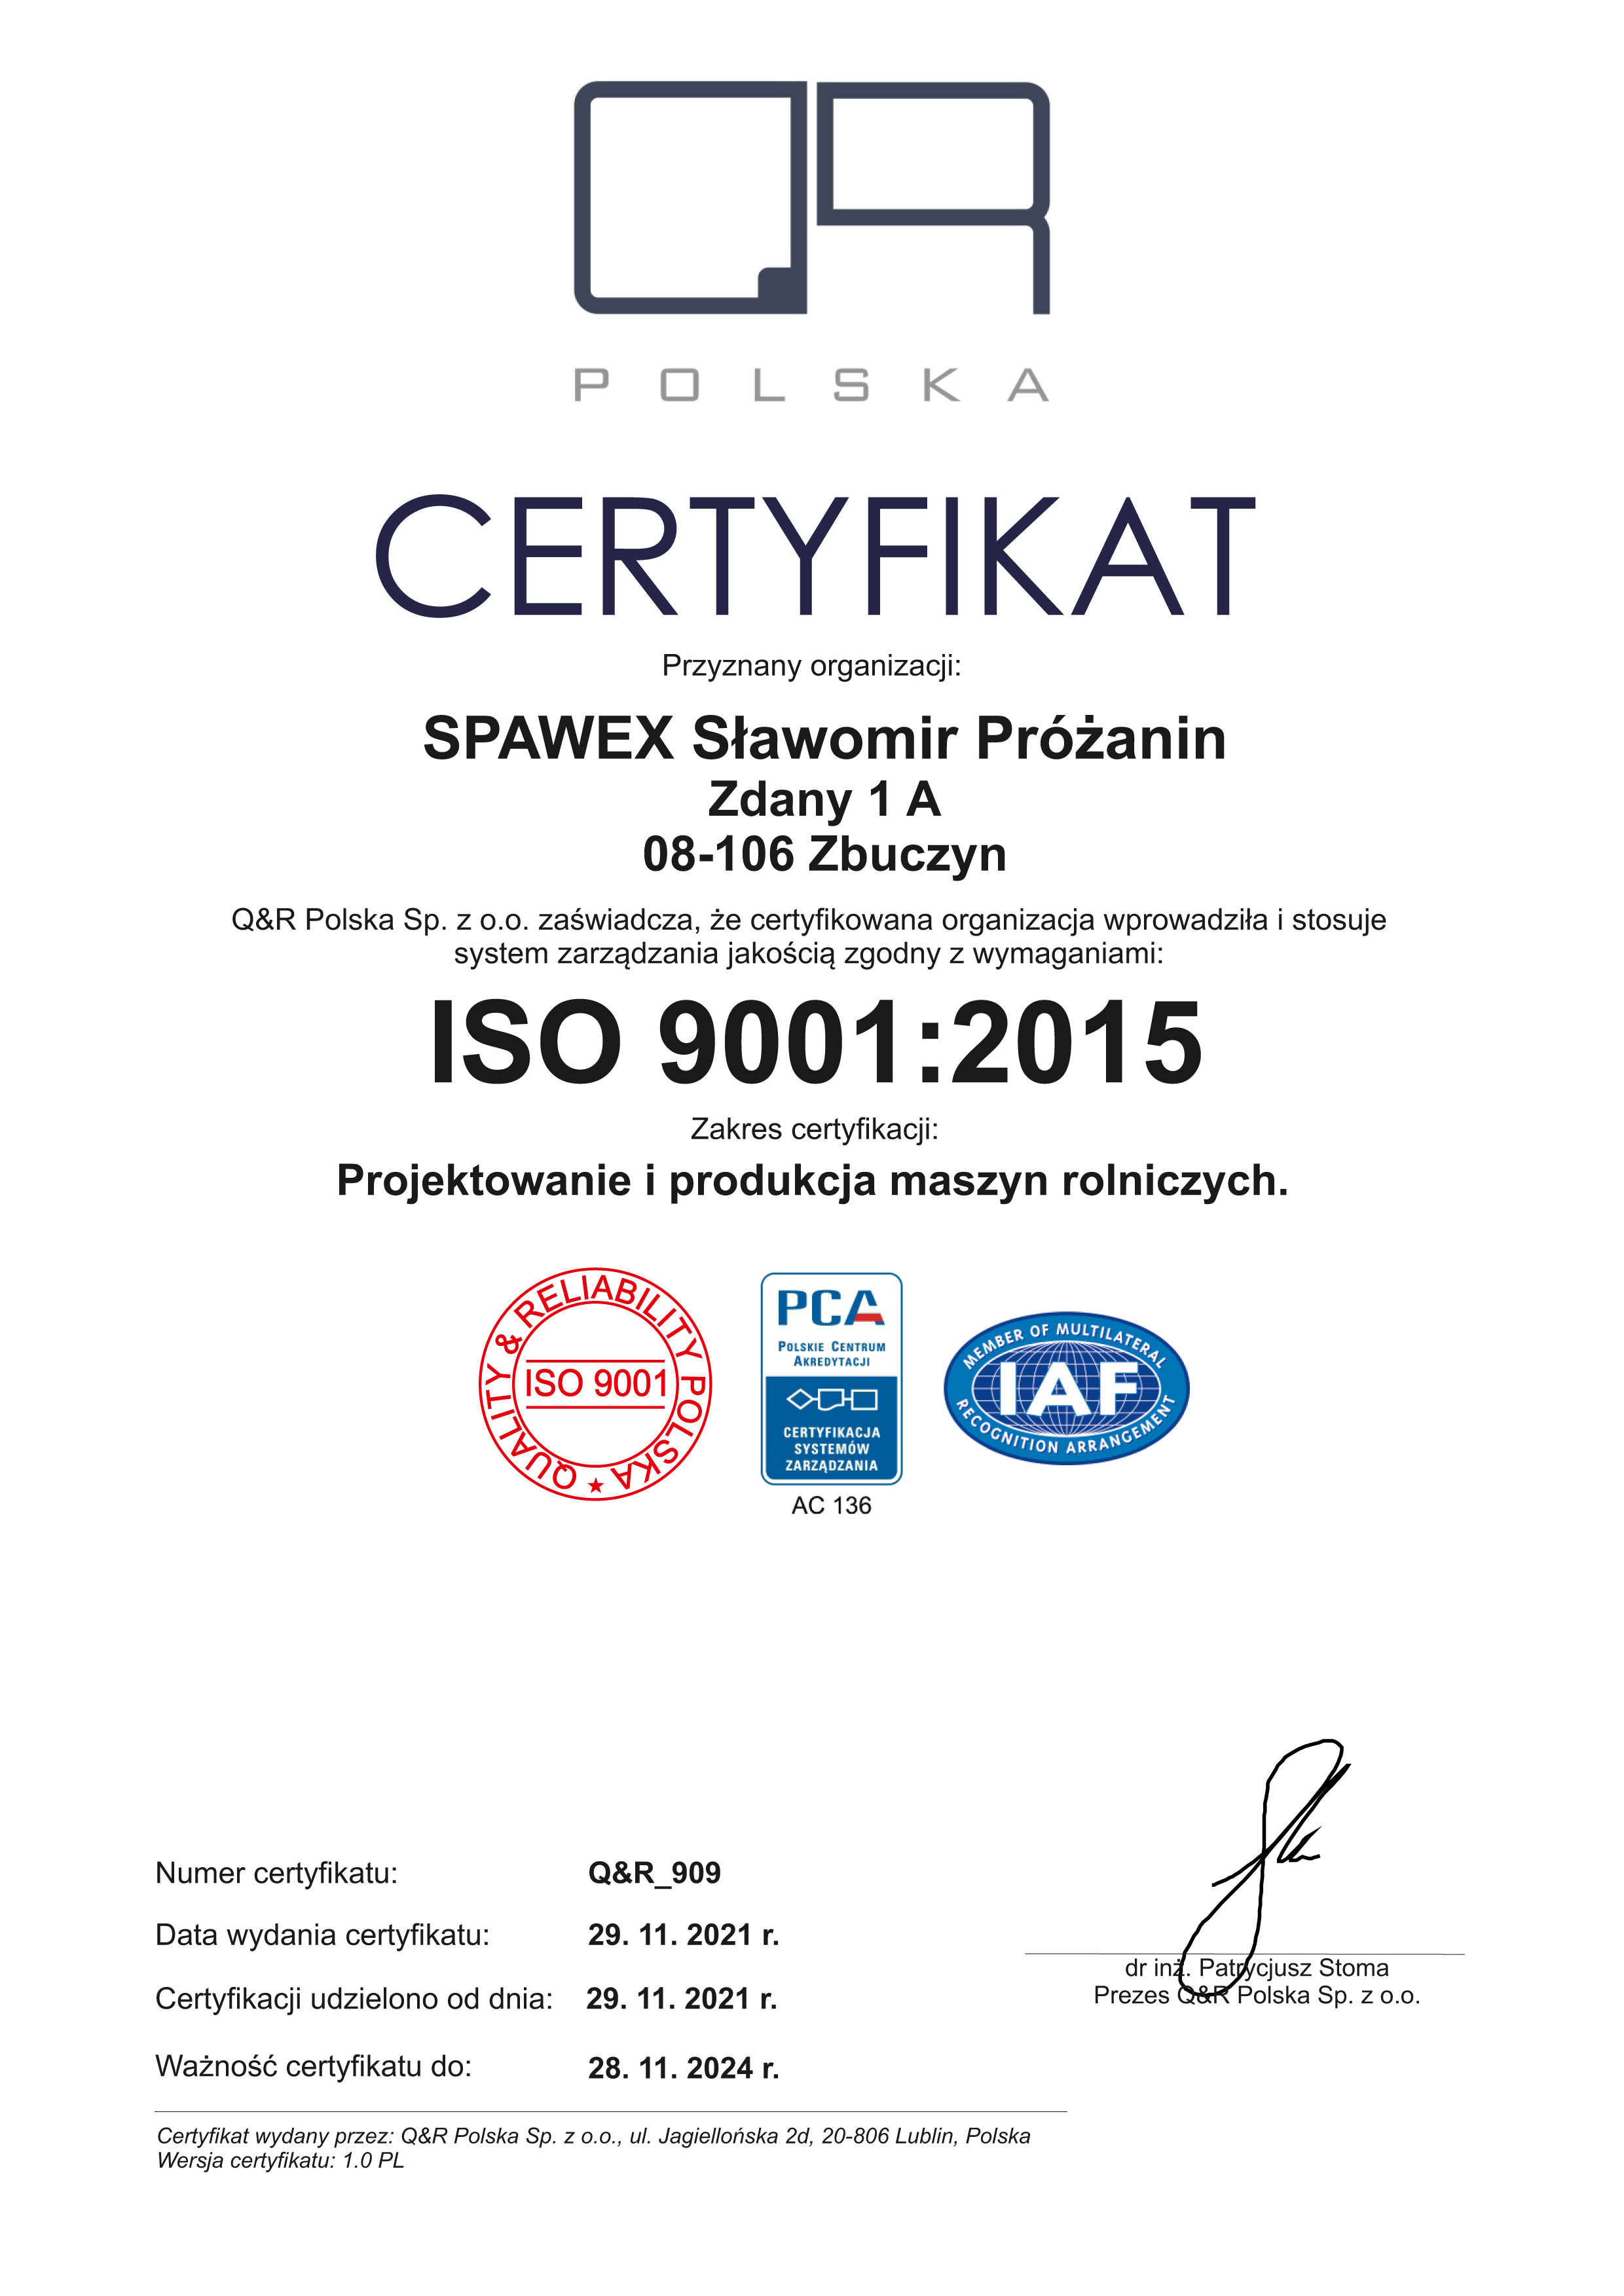  ISO 9001:2015 w zakres certyfikacji: Projektowanie i produkcja maszyn rolniczych.